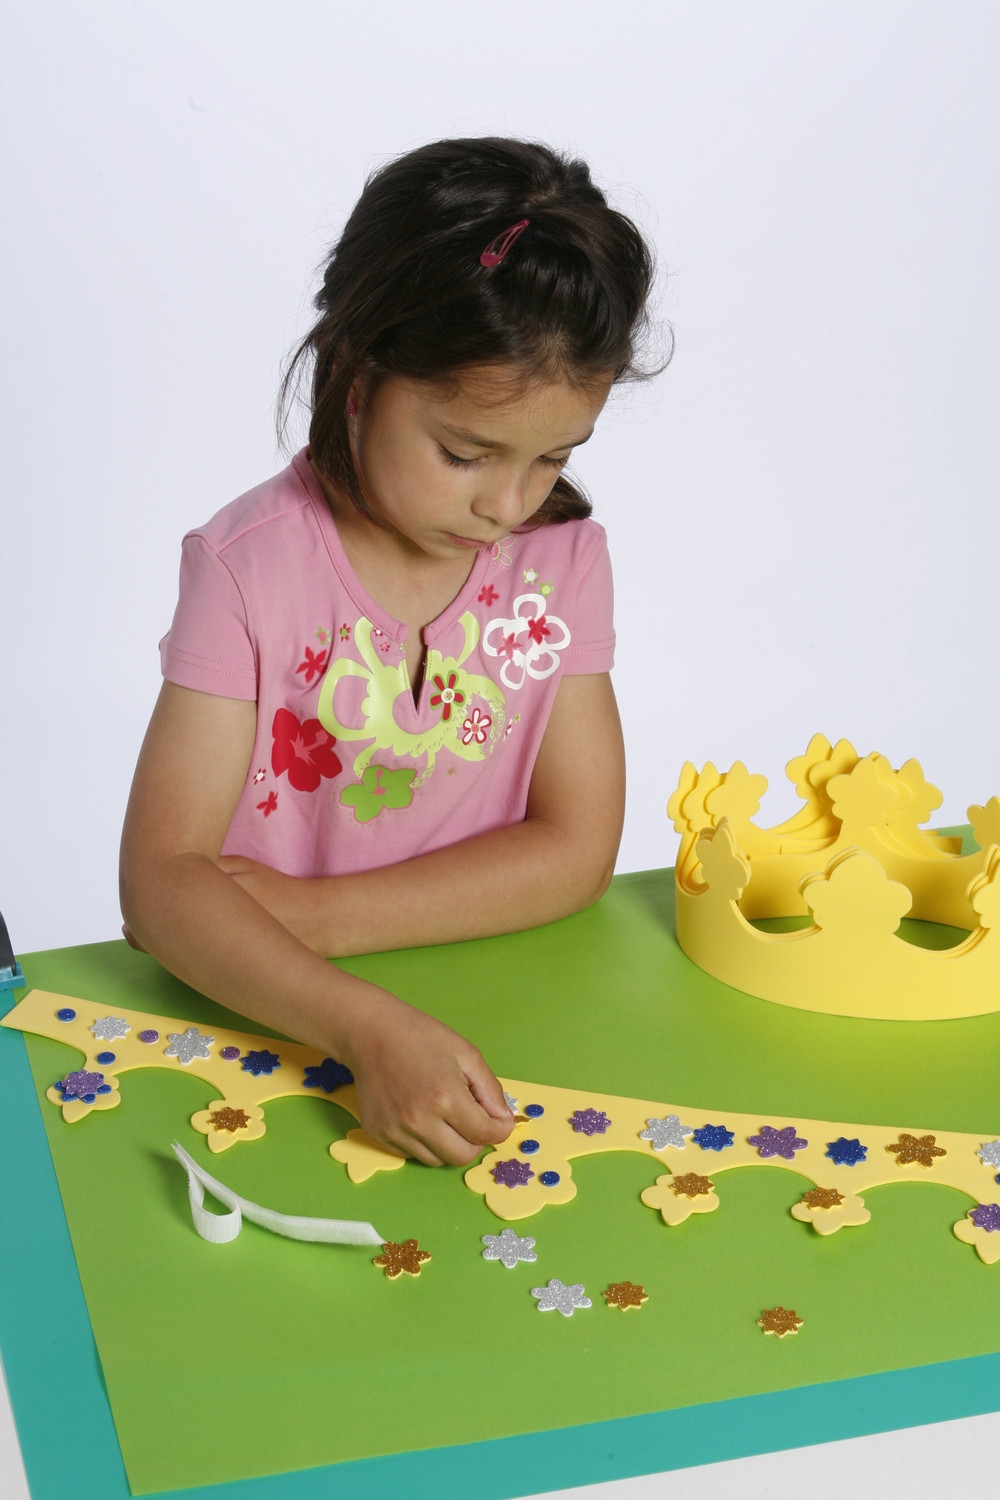 Couronnes vierges en carton vides pour les enfants à décorer - Concevez  votre propre